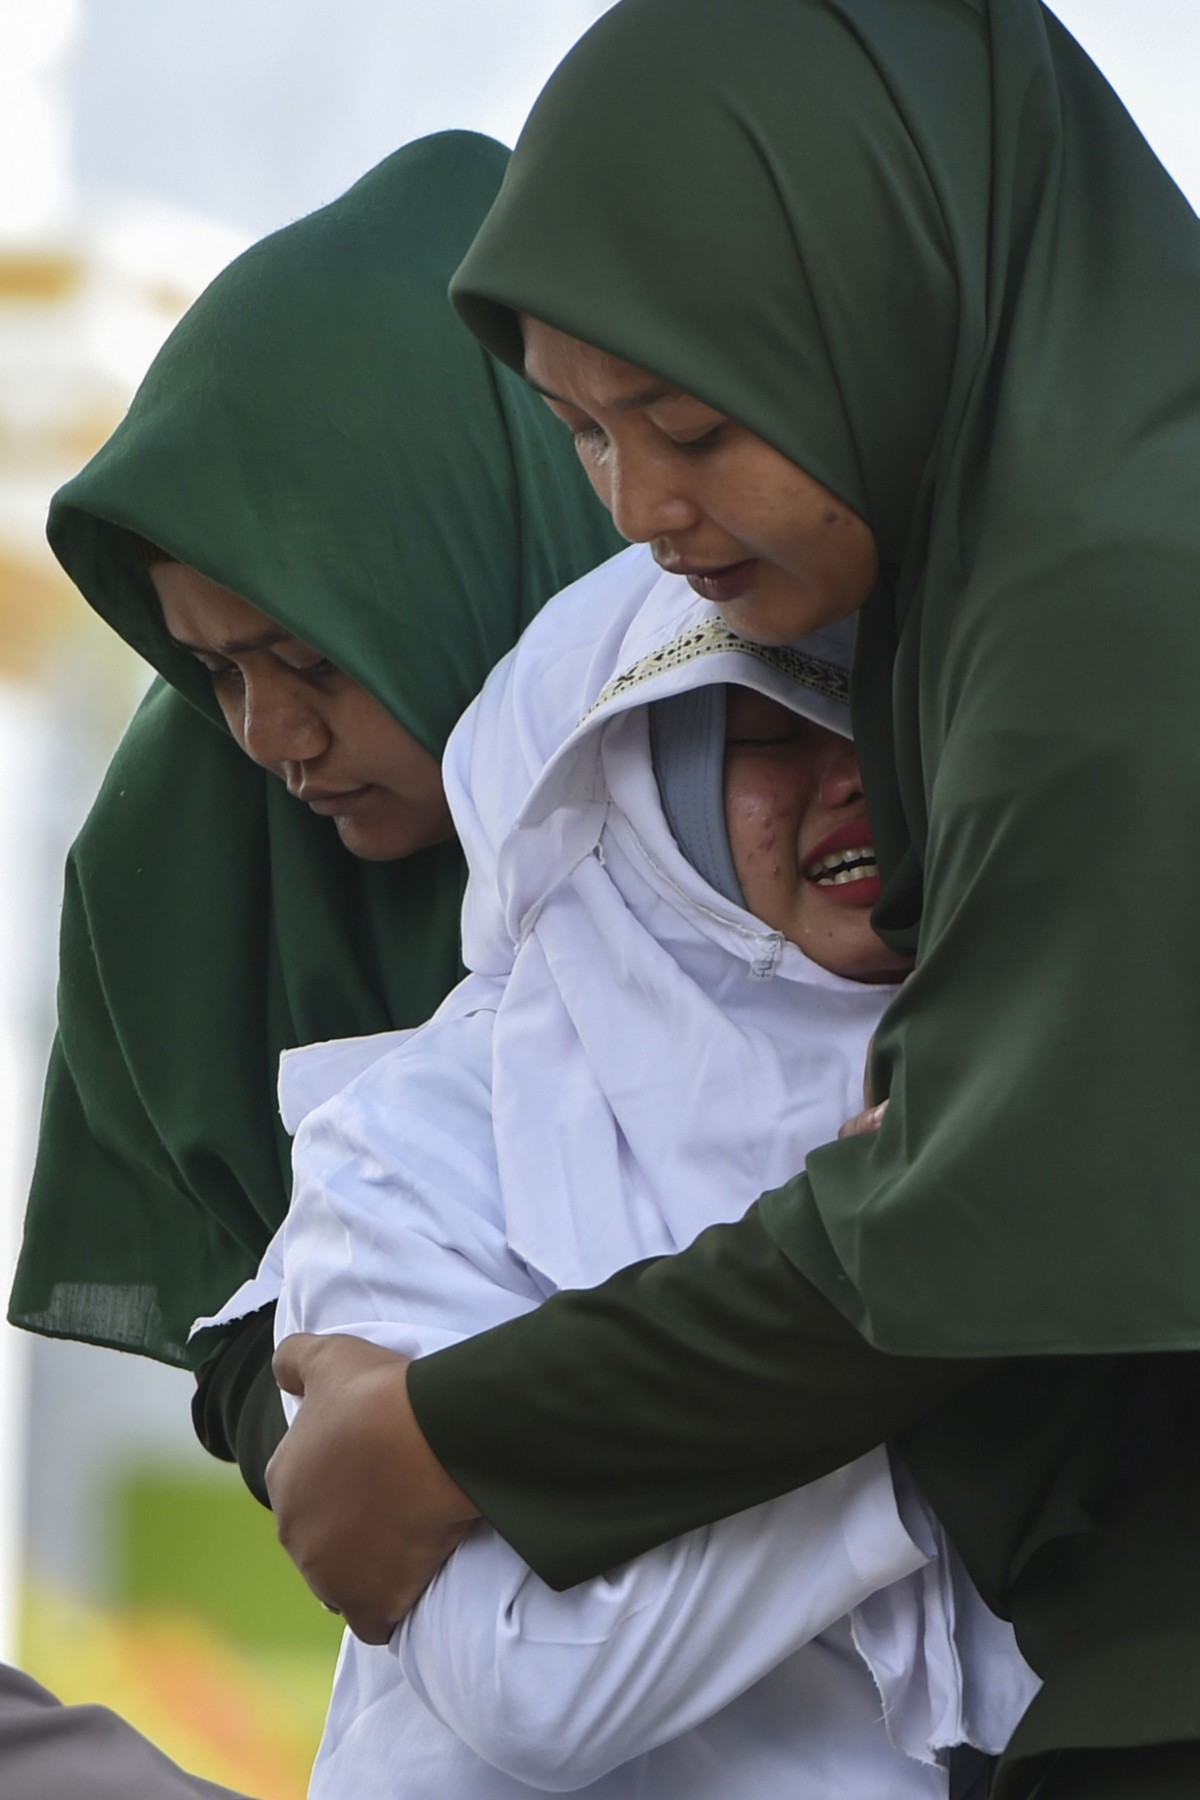 Шесть неженатых пар прилюдно отлупили палками в Индонезии МиР